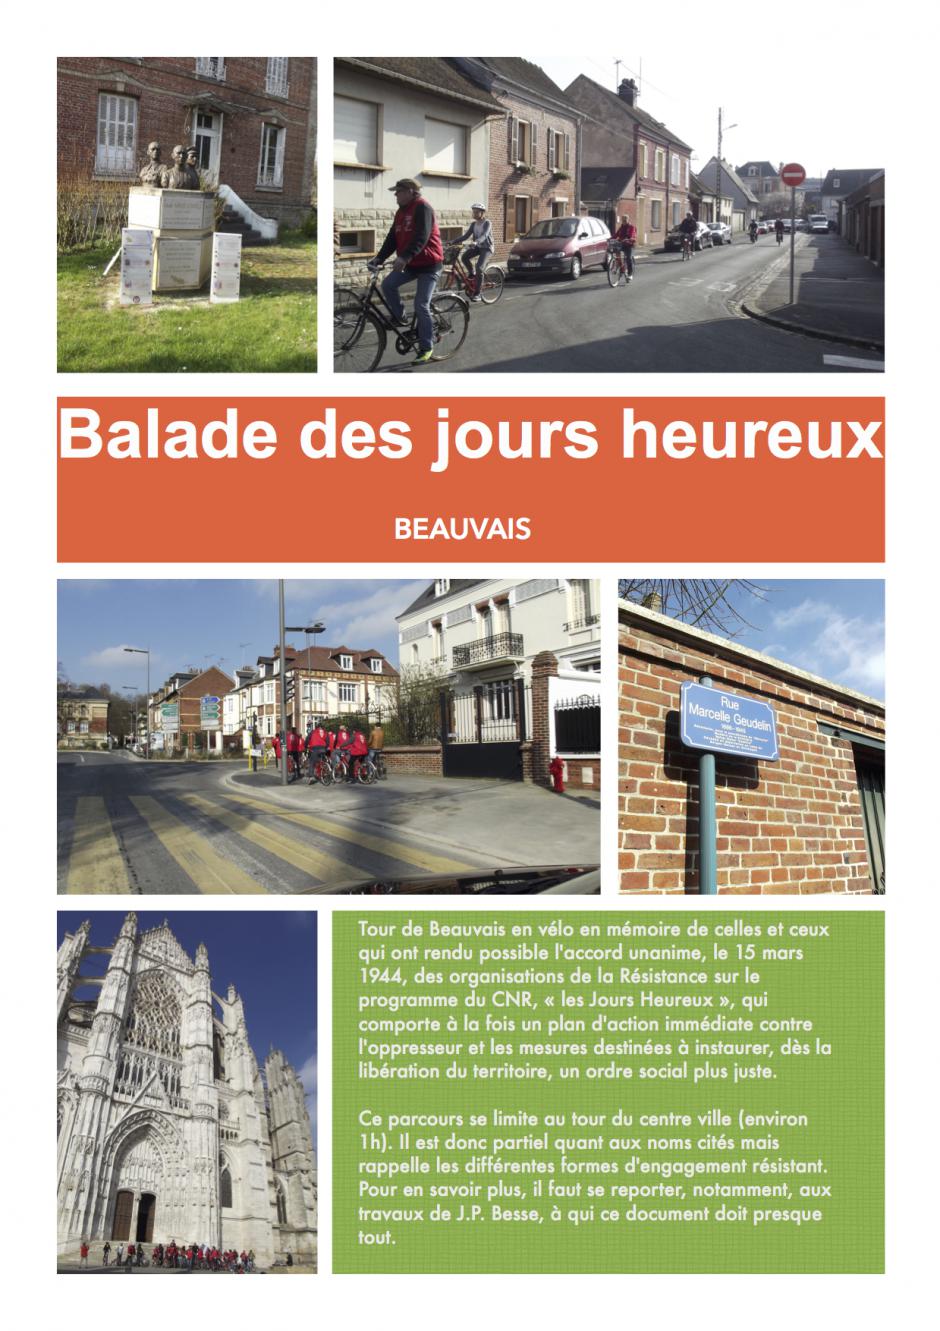 8 mai, Beauvais - Balade des Jours heureux (circuit du souvenir)